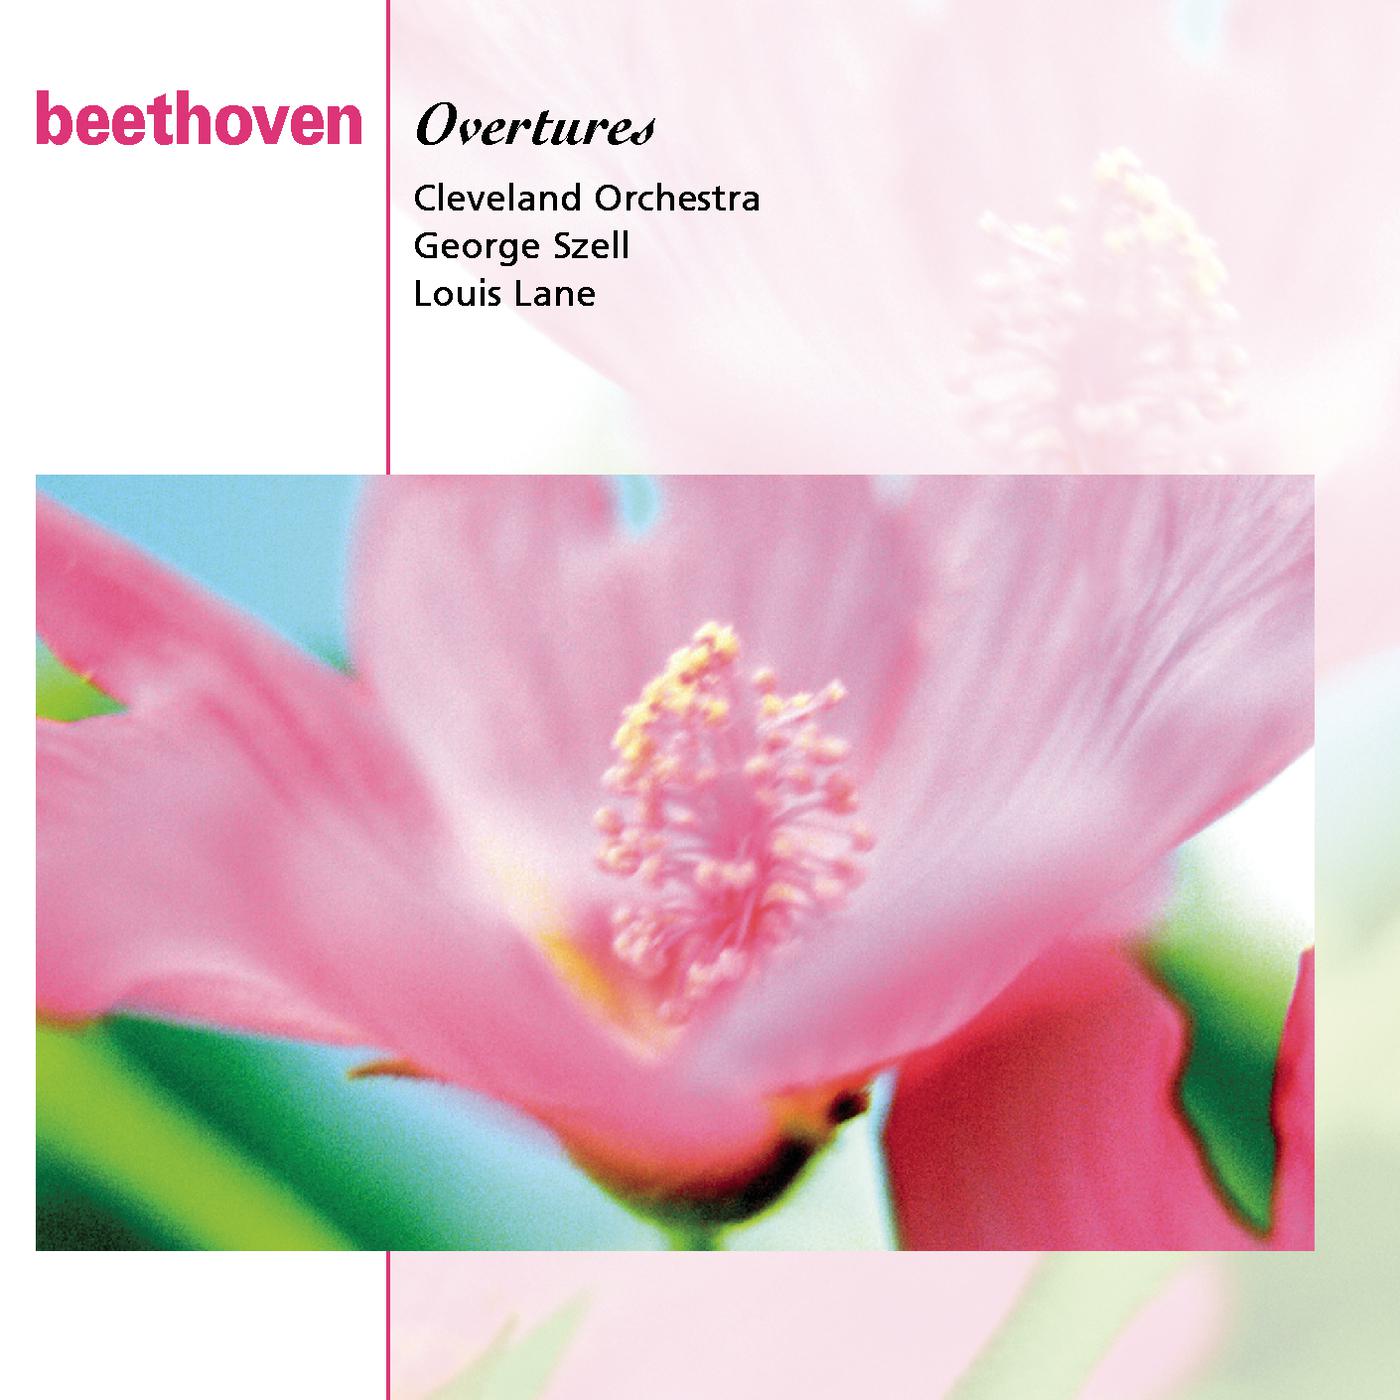 Leonore Overture No. 3, Op. 72b